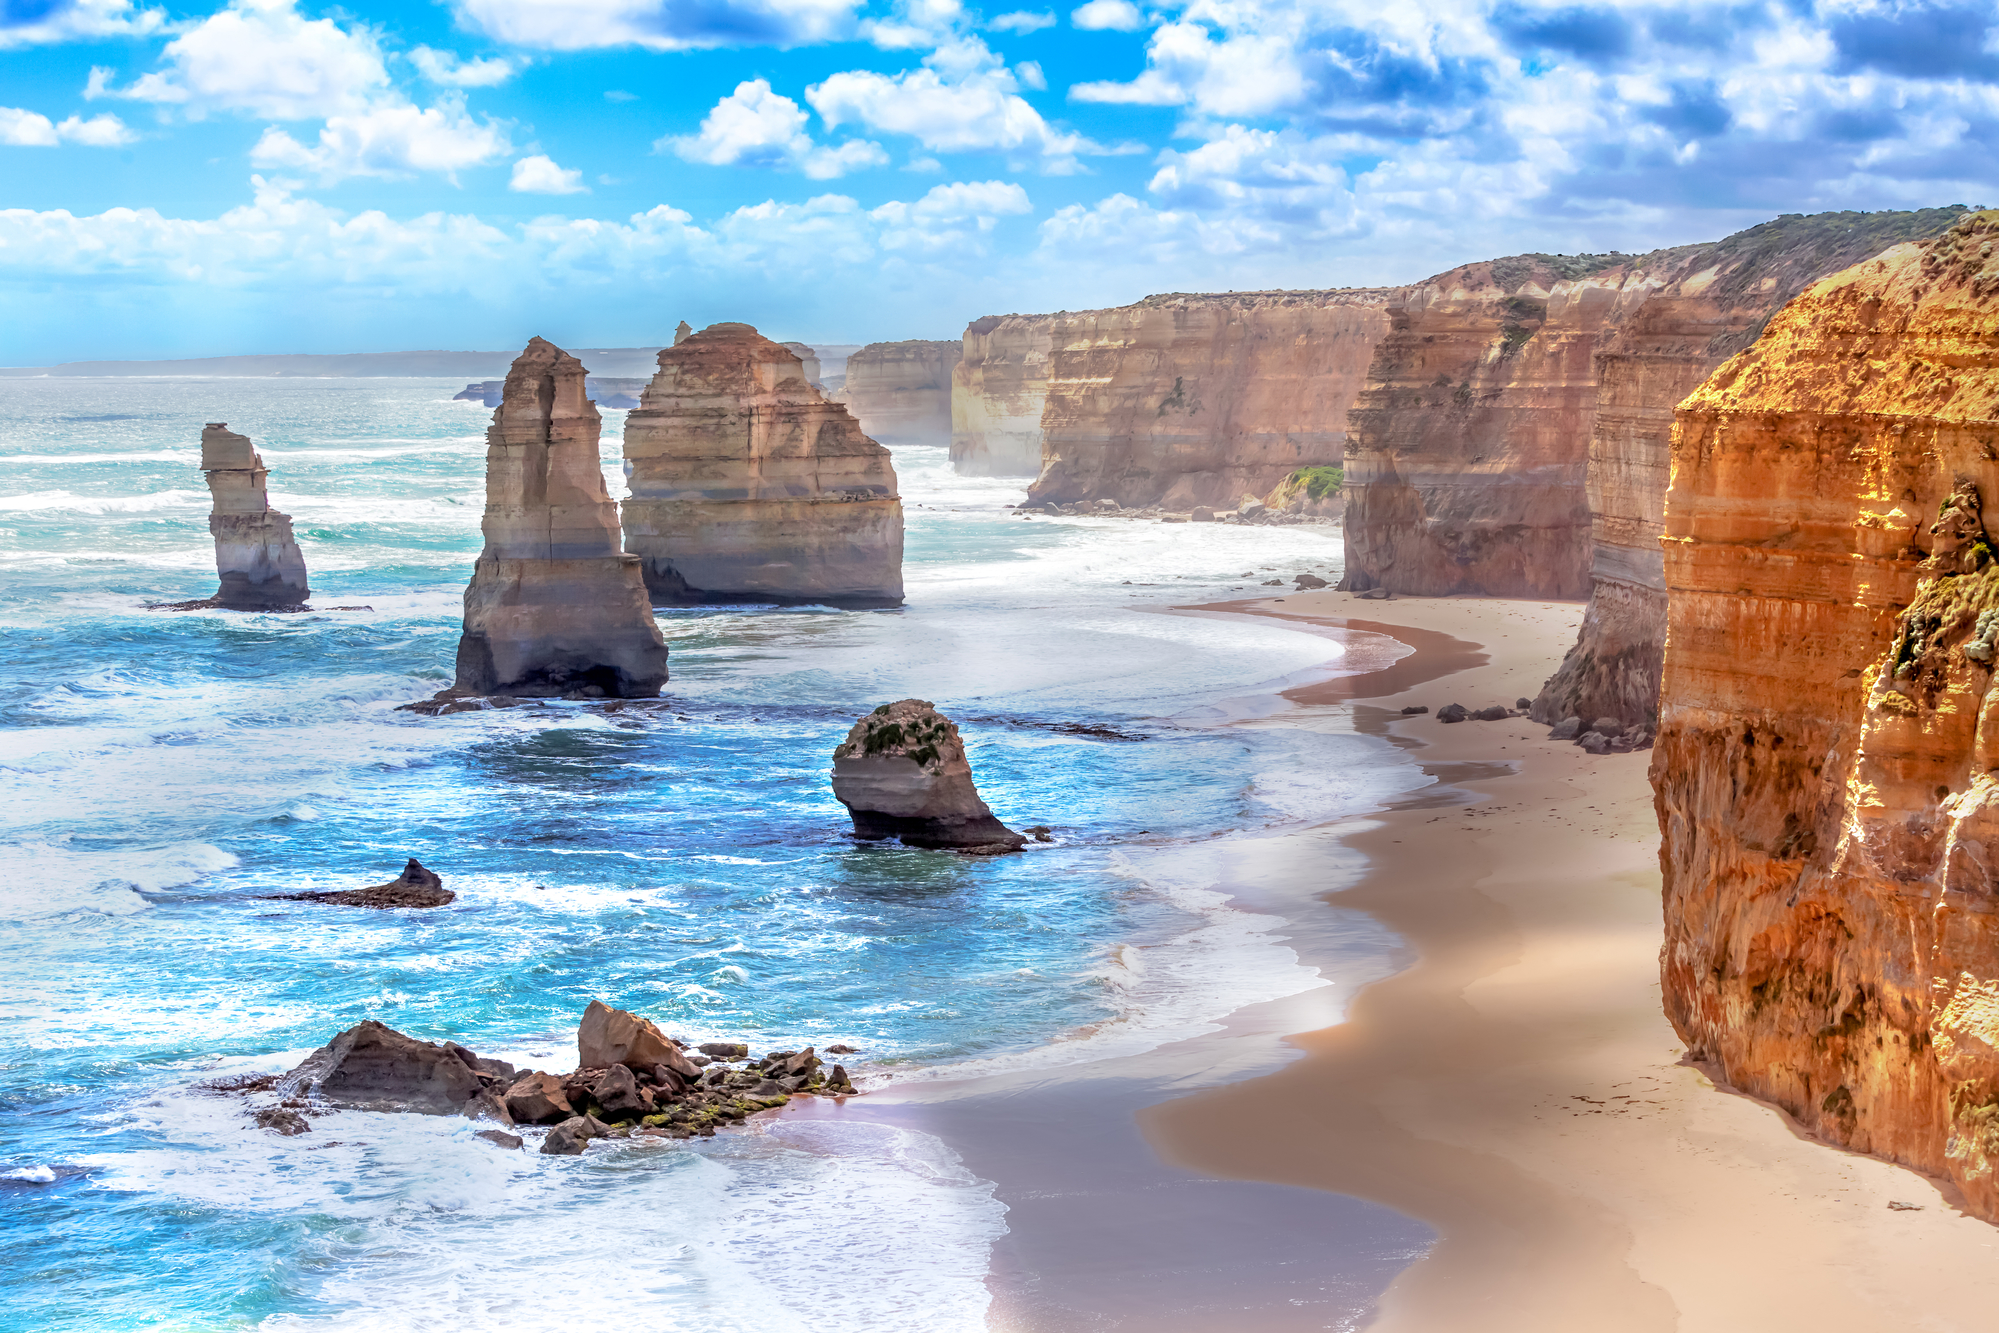 【尽享呼吸】澳大利亚塔斯马尼亚深度15-16日游【畅游四大州+独家塔斯马尼亚+布里斯班或黄金海岸+悉尼+维多利亚】